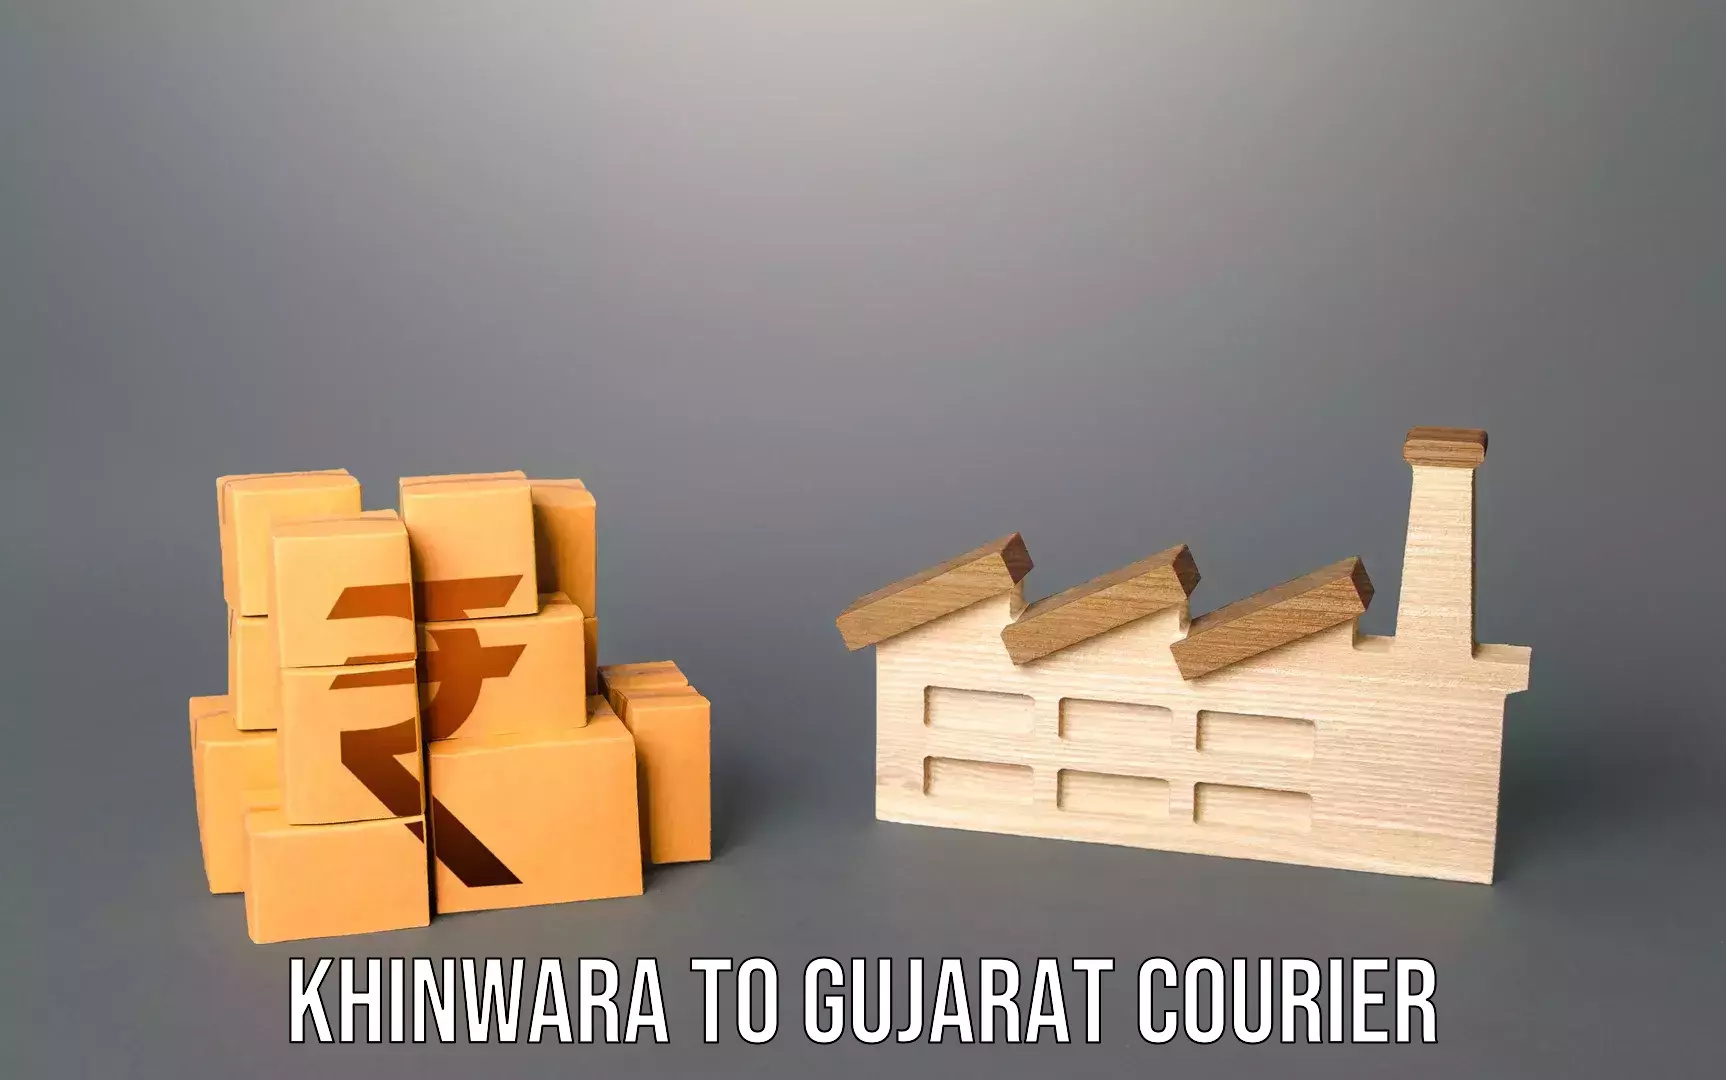 Baggage courier service Khinwara to Gujarat